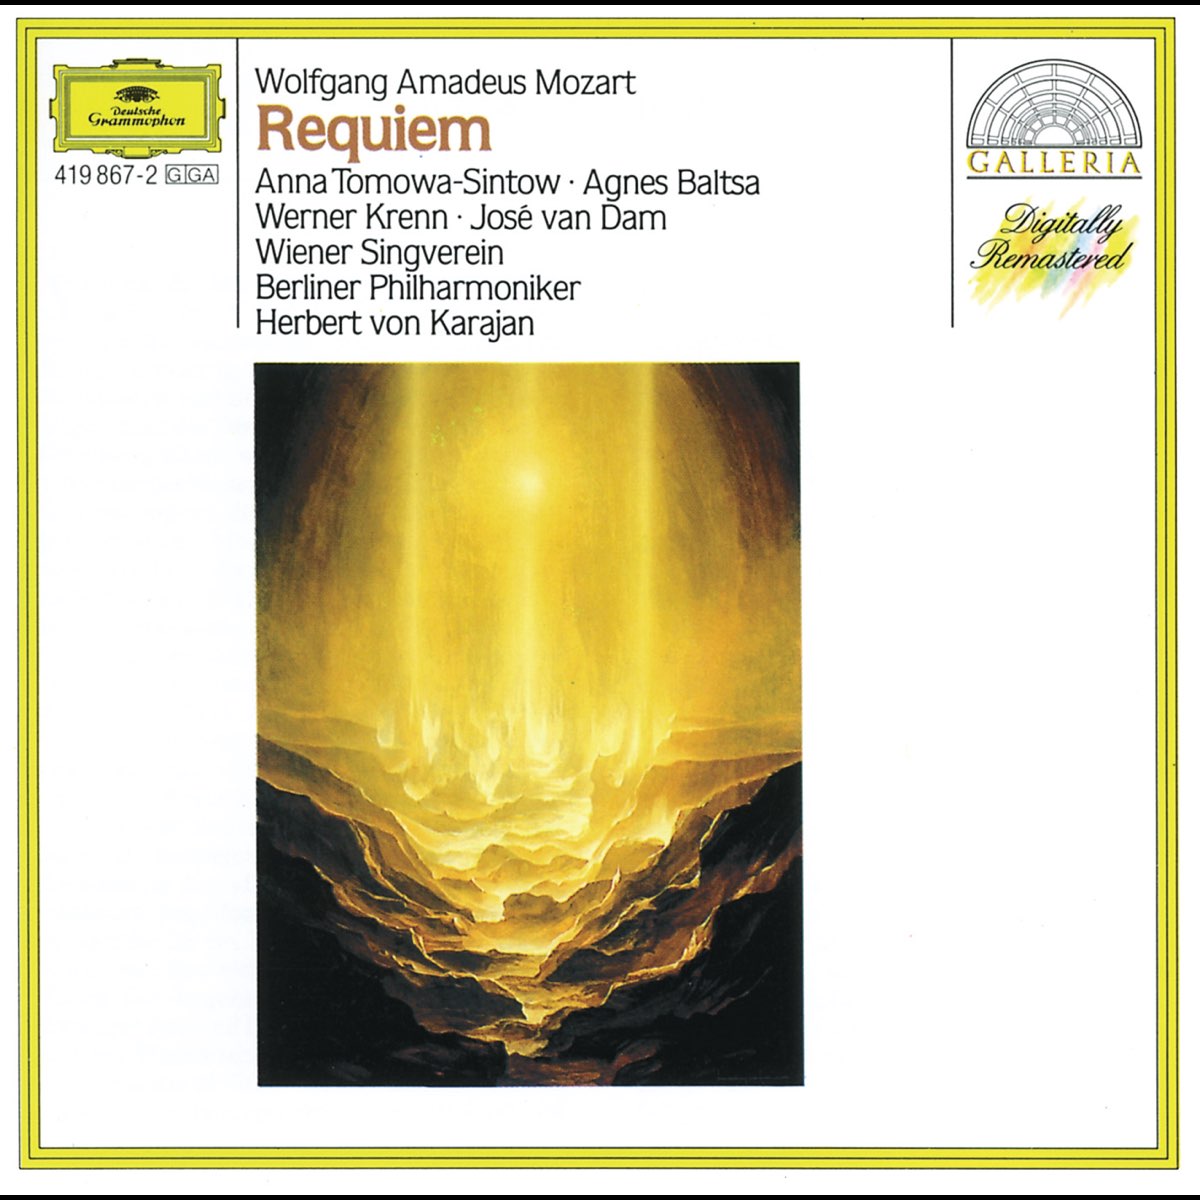 Mozart - Requiem - Confutatis (Latin - Español) 